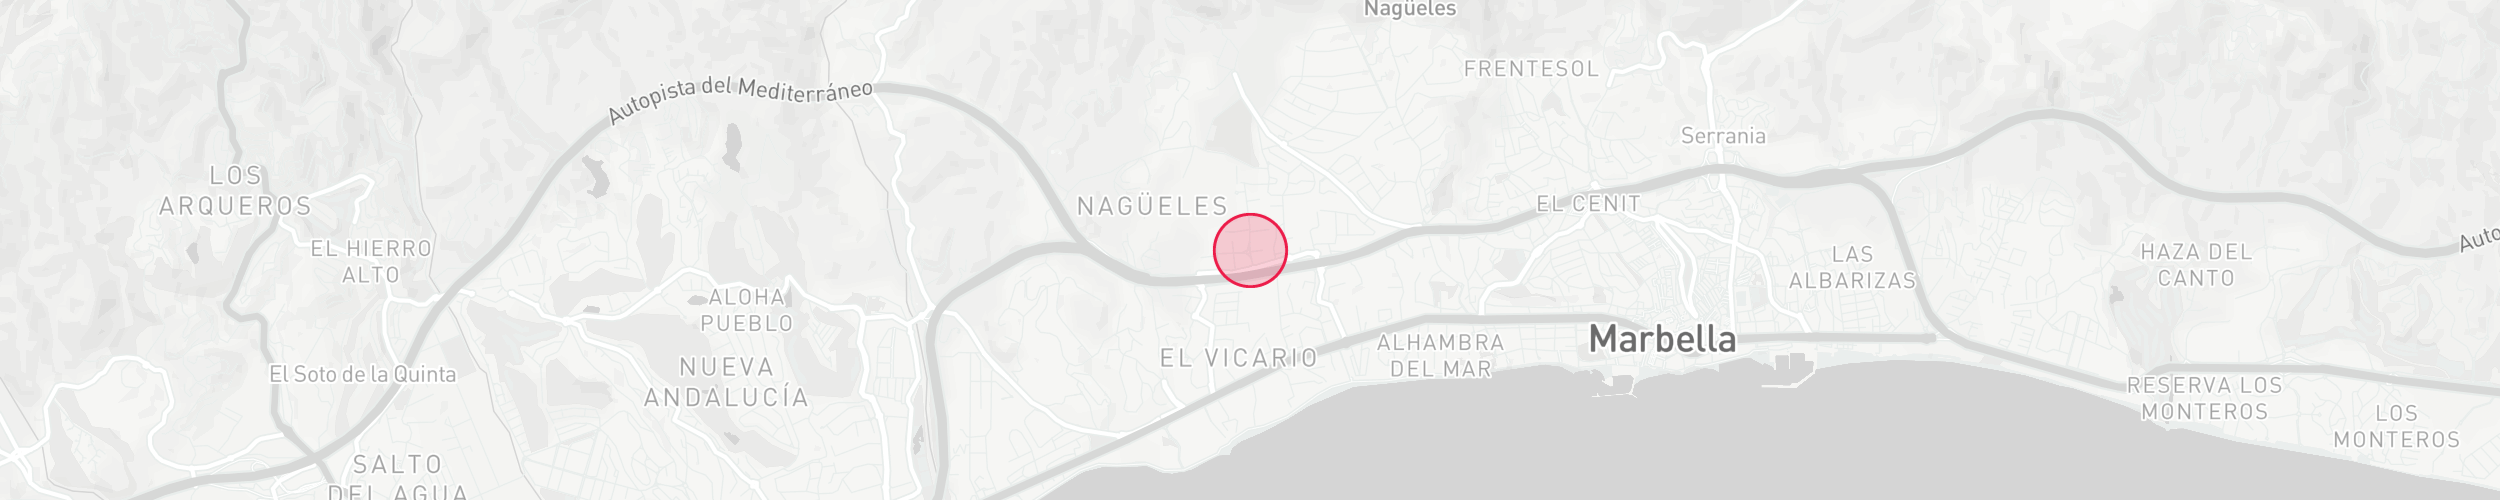 Mapa de localización de la propiedad - Nagüeles